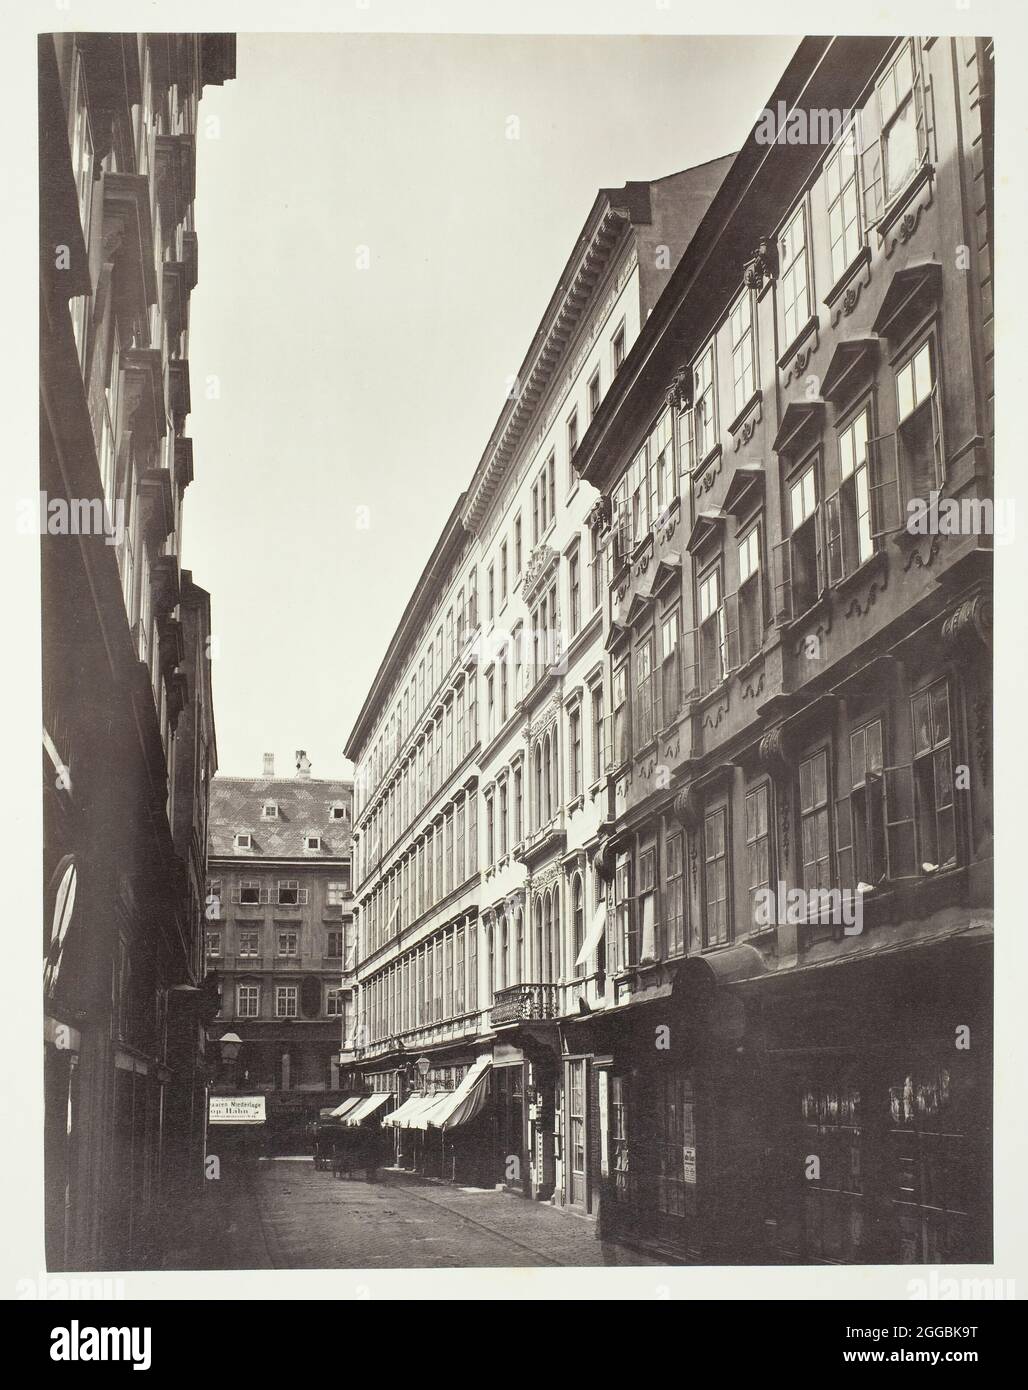 Wollzeile No. 3, Zinshaus des Peter Ritter von Calvagni, 1860s. Apartments in Vienna. Albumen print. Stock Photo